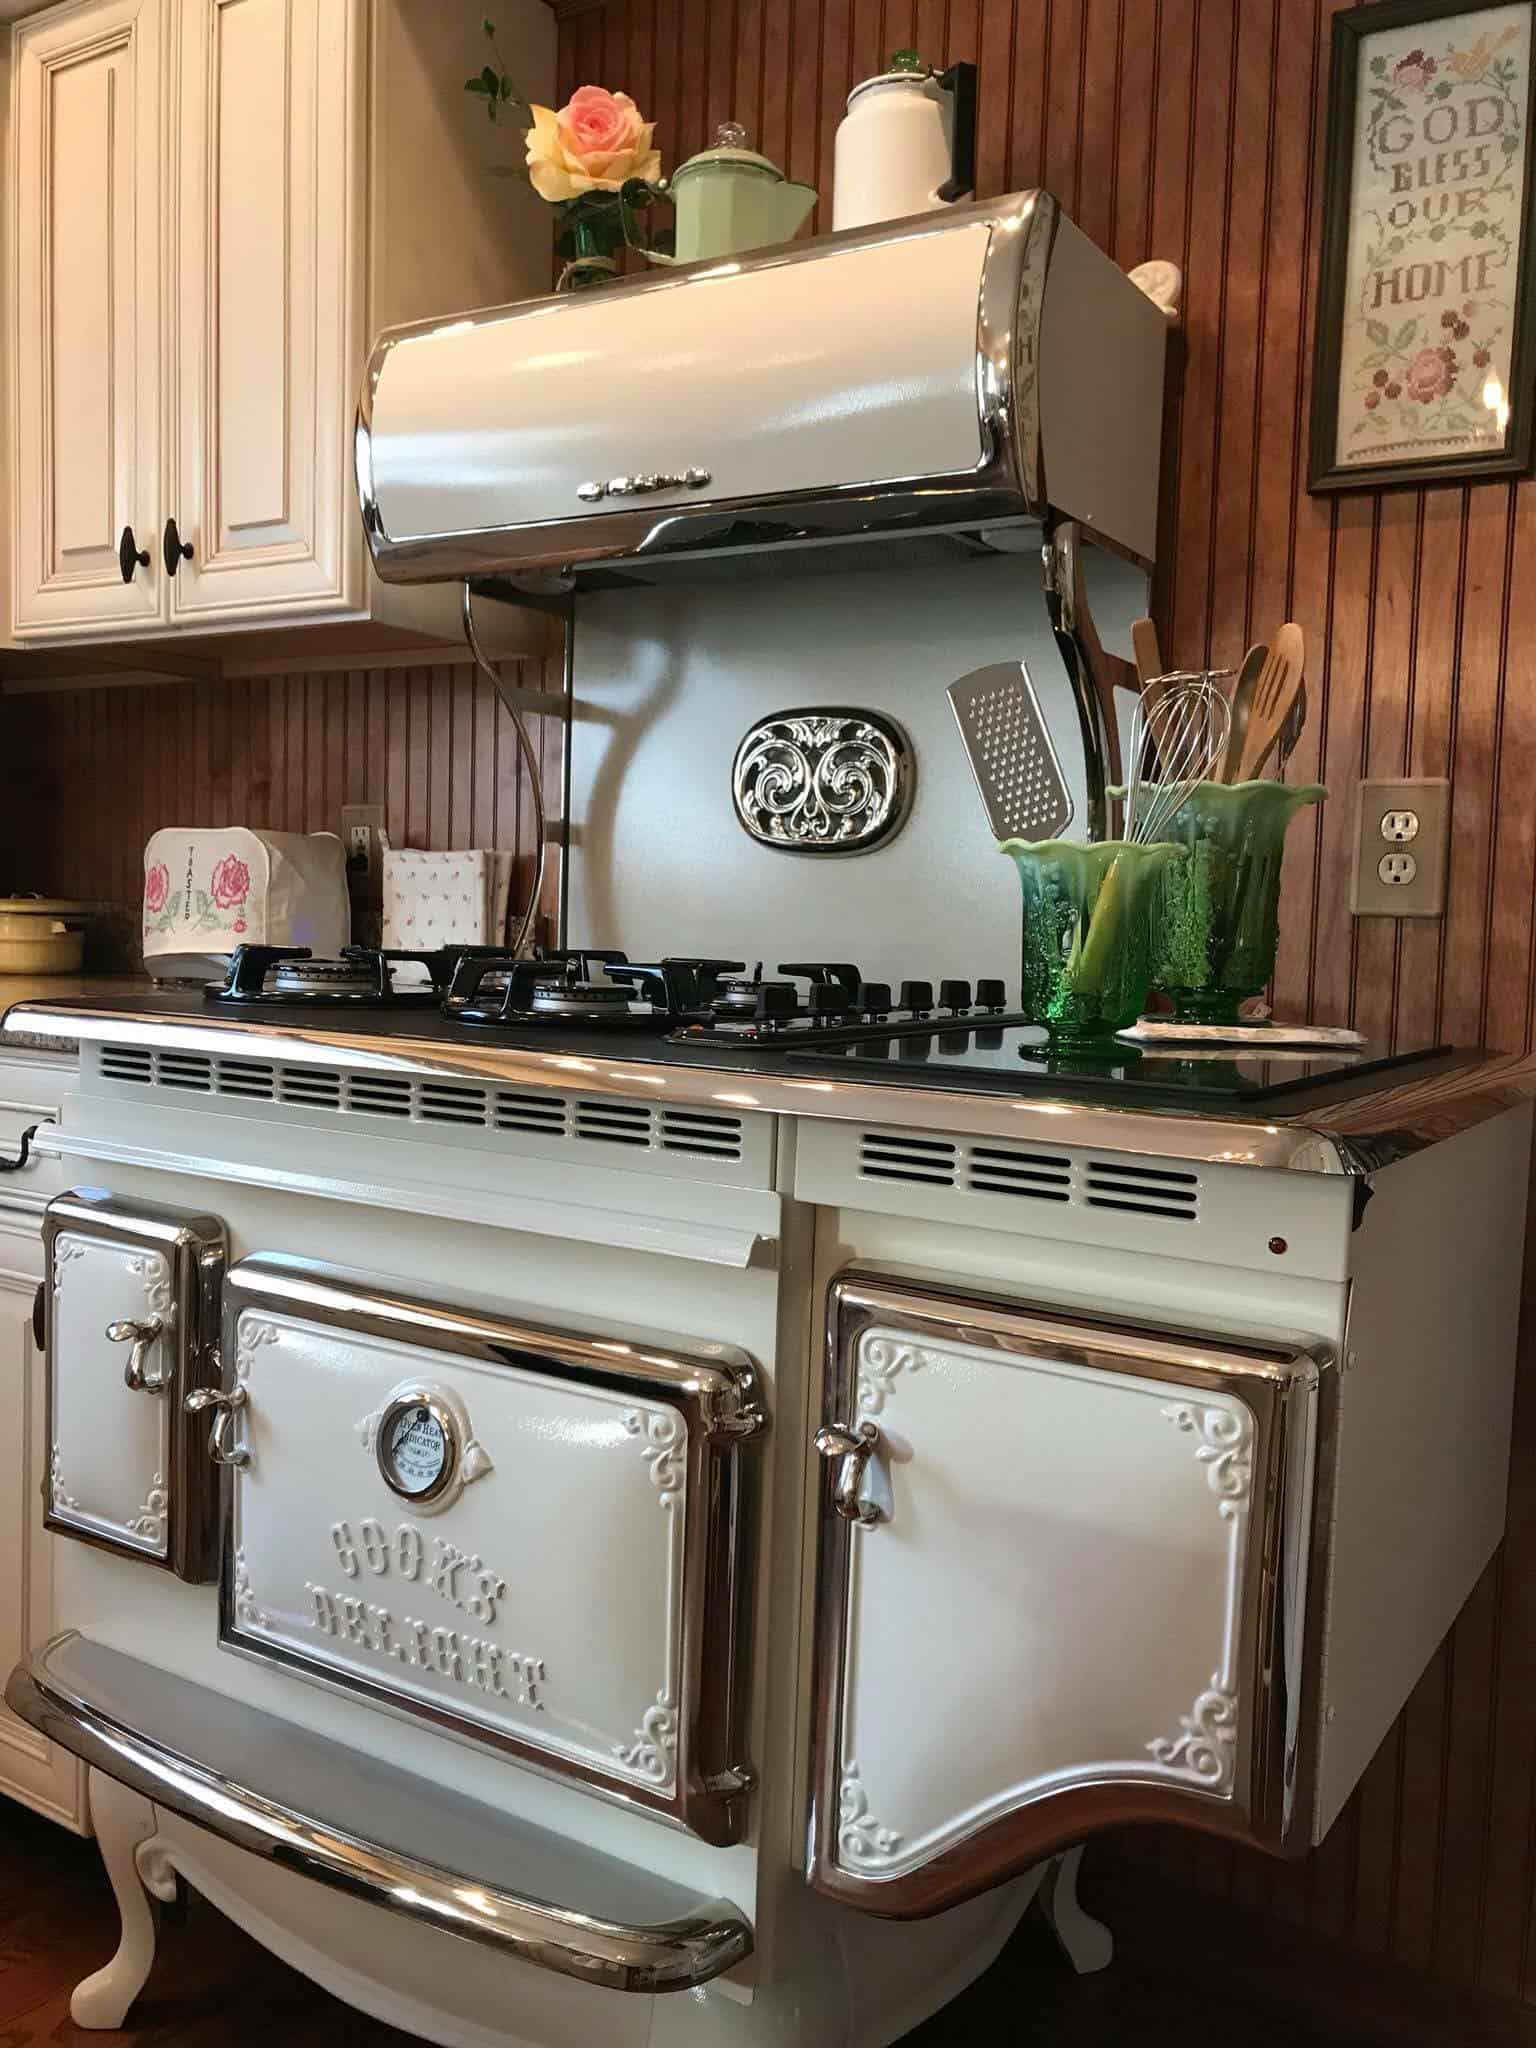 retro-kitchen-appliances-by-elmira-stove-works-designs-ideas-on-dornob